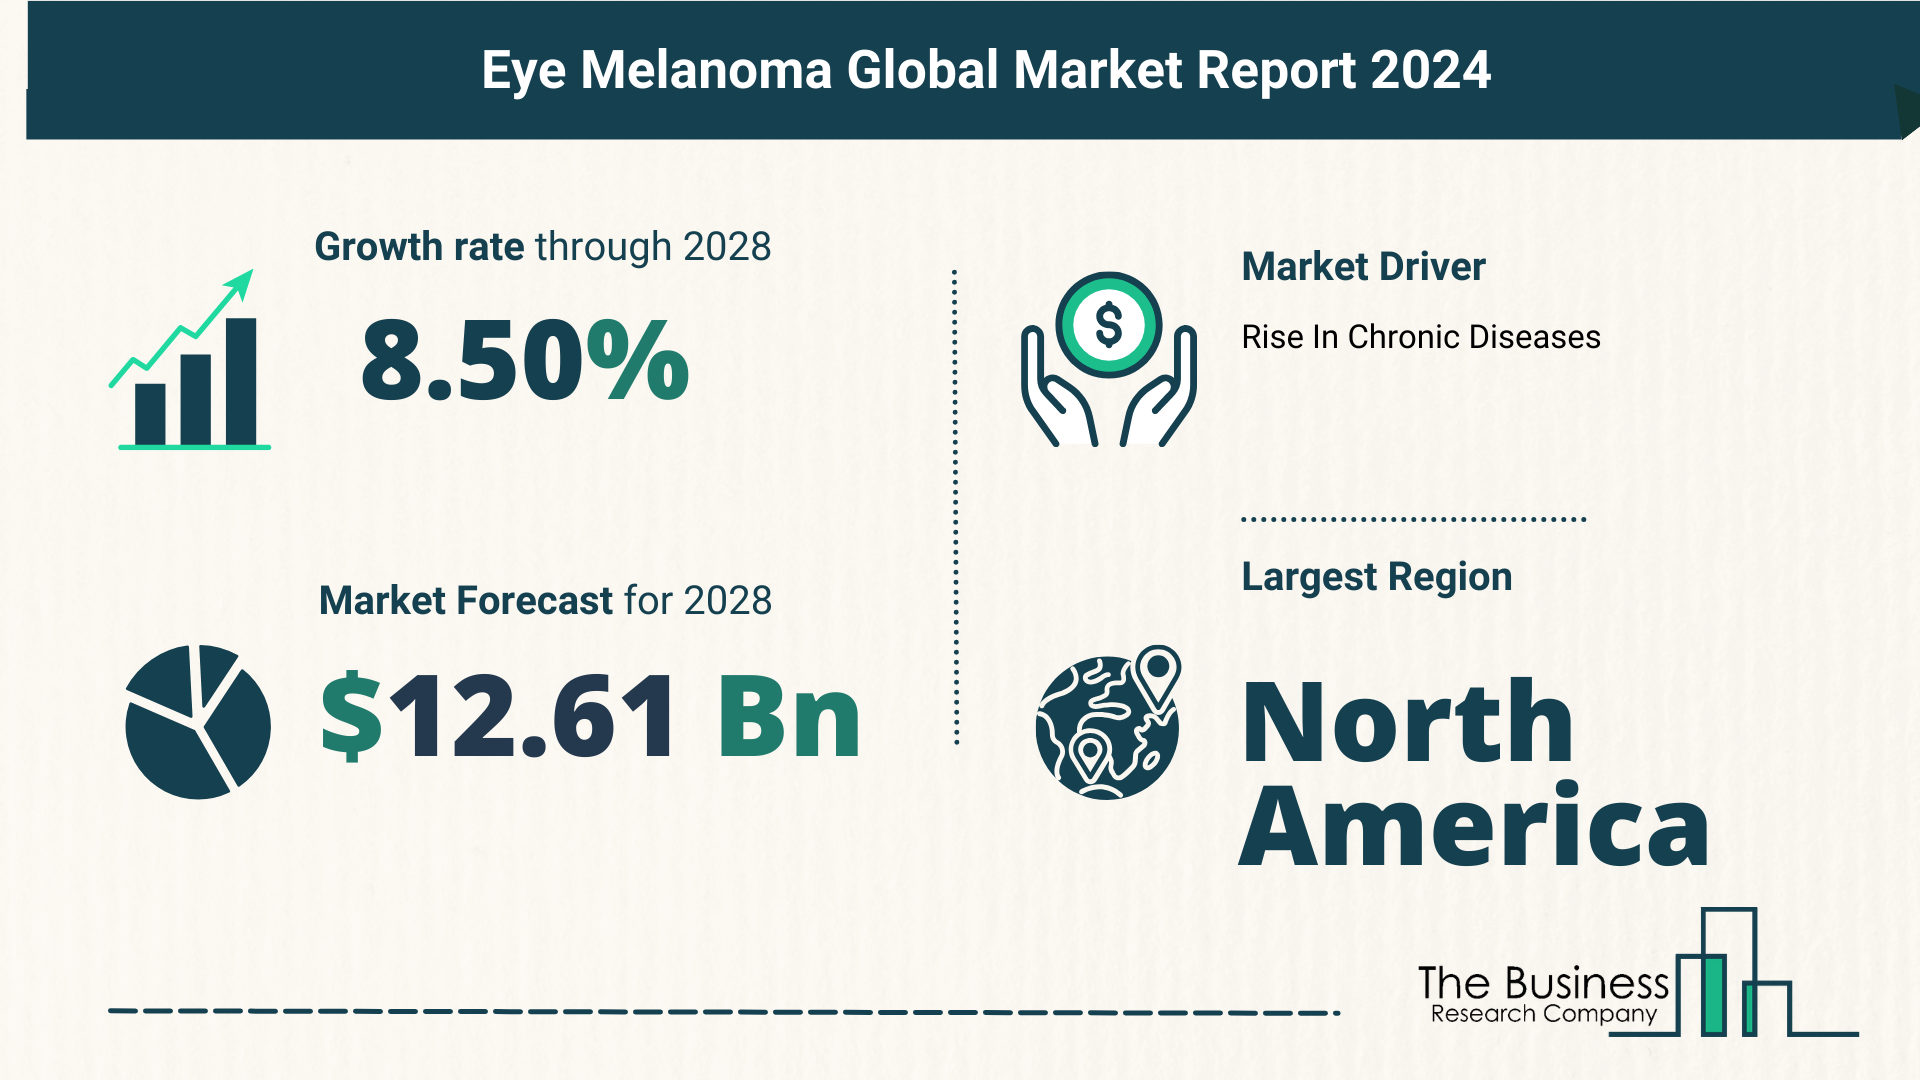 Global Eye Melanoma Market